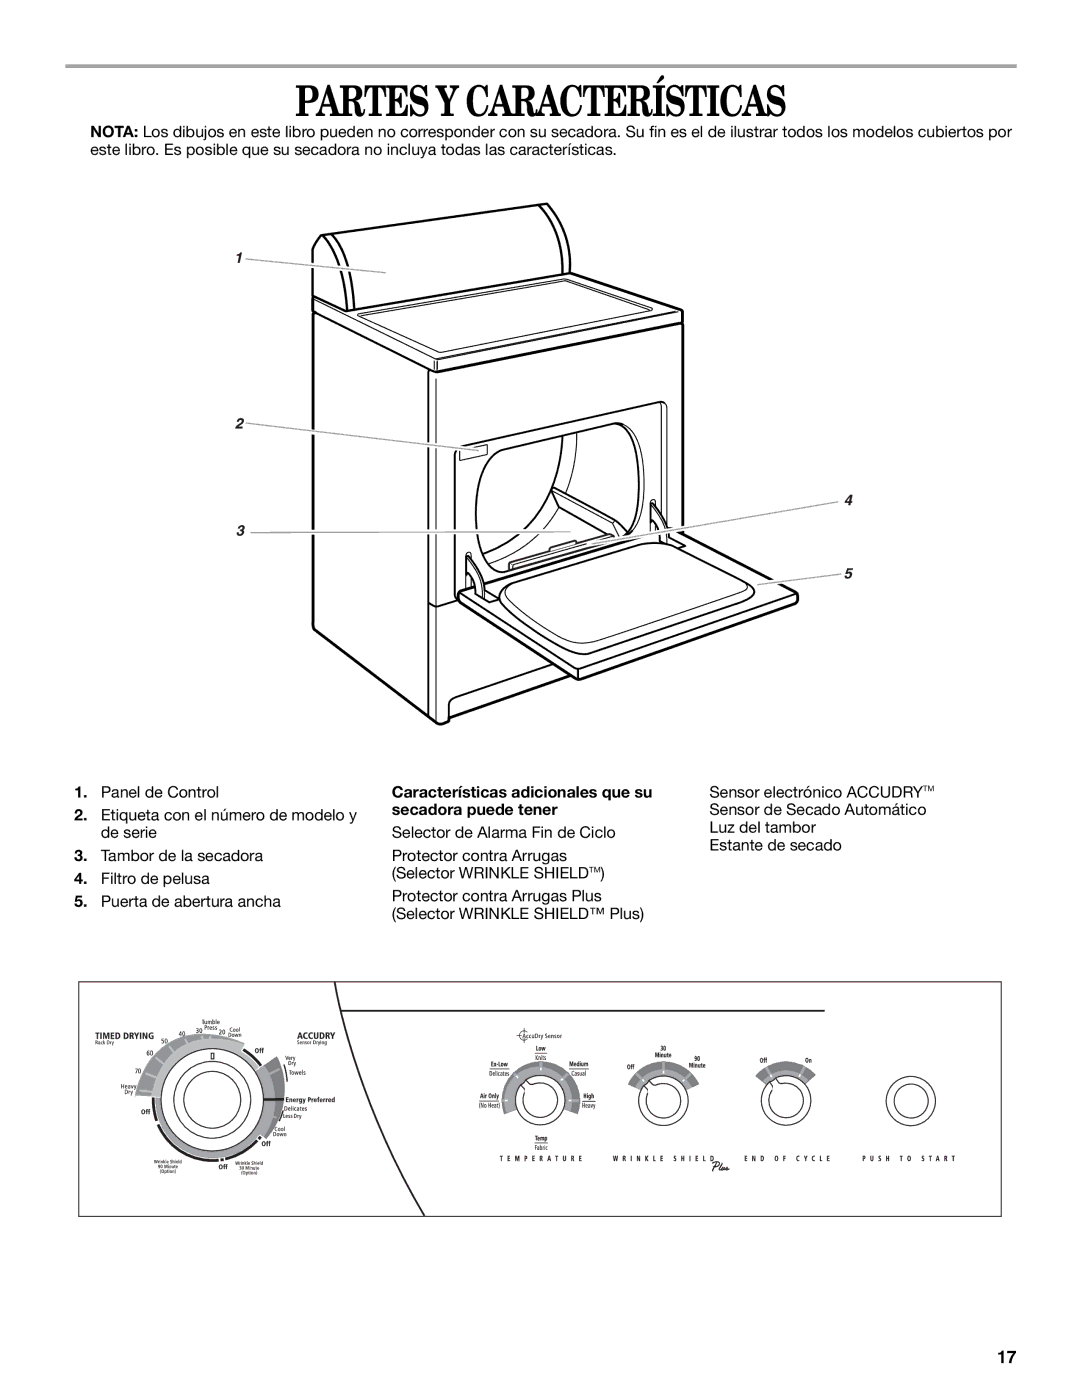 Whirlpool GEQ8821KQ0 manual Partes Y Características, Características adicionales que su secadora puede tener 